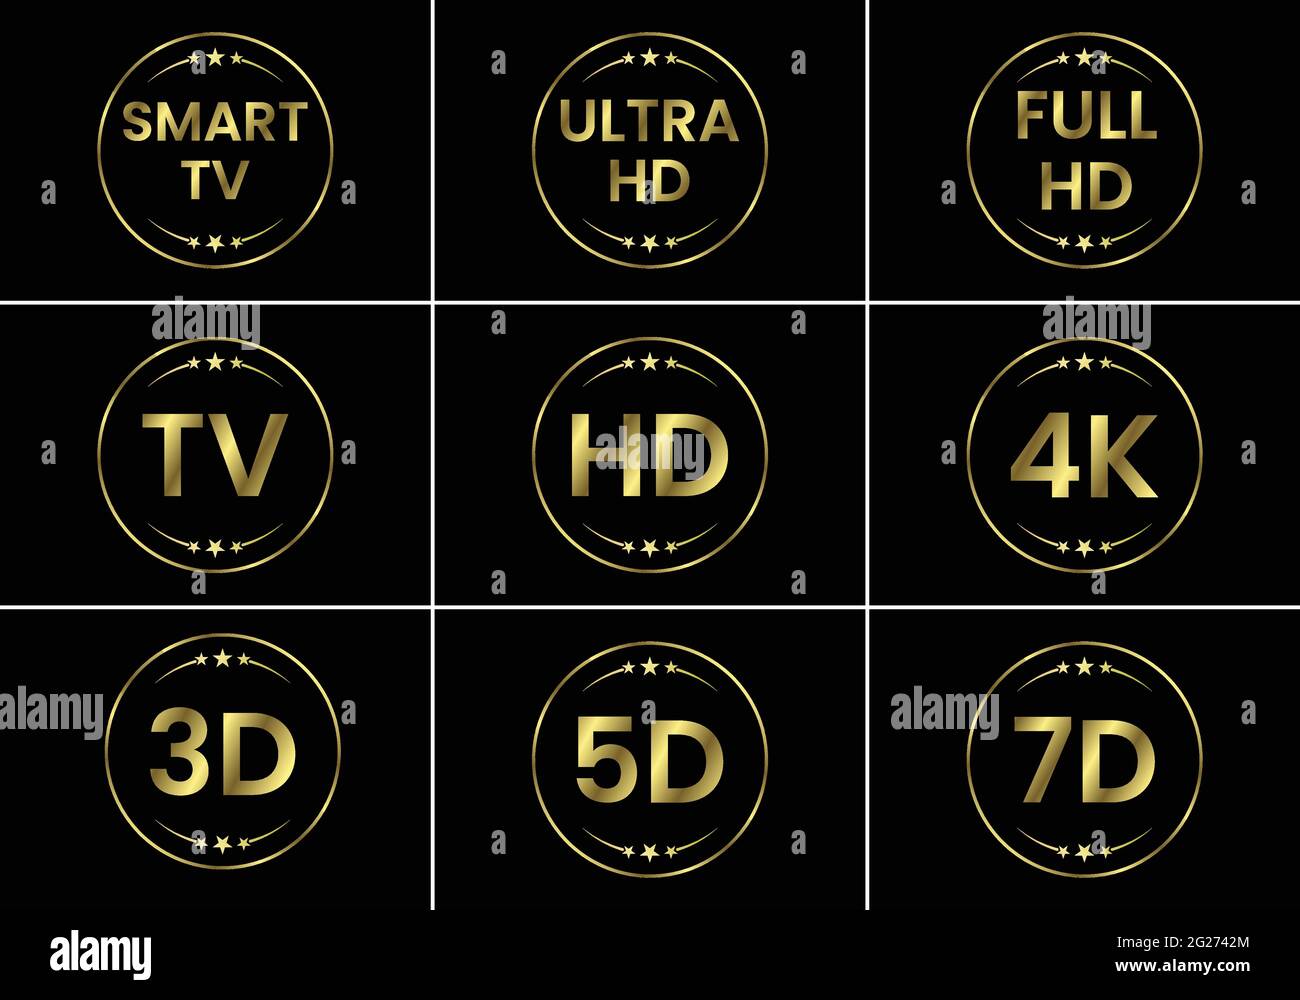 Golden TV-Symbol-Set. TV Labels TV HD 3D 5D 7D Smart TV Full HD 4K Ultra HD Stock Vektor